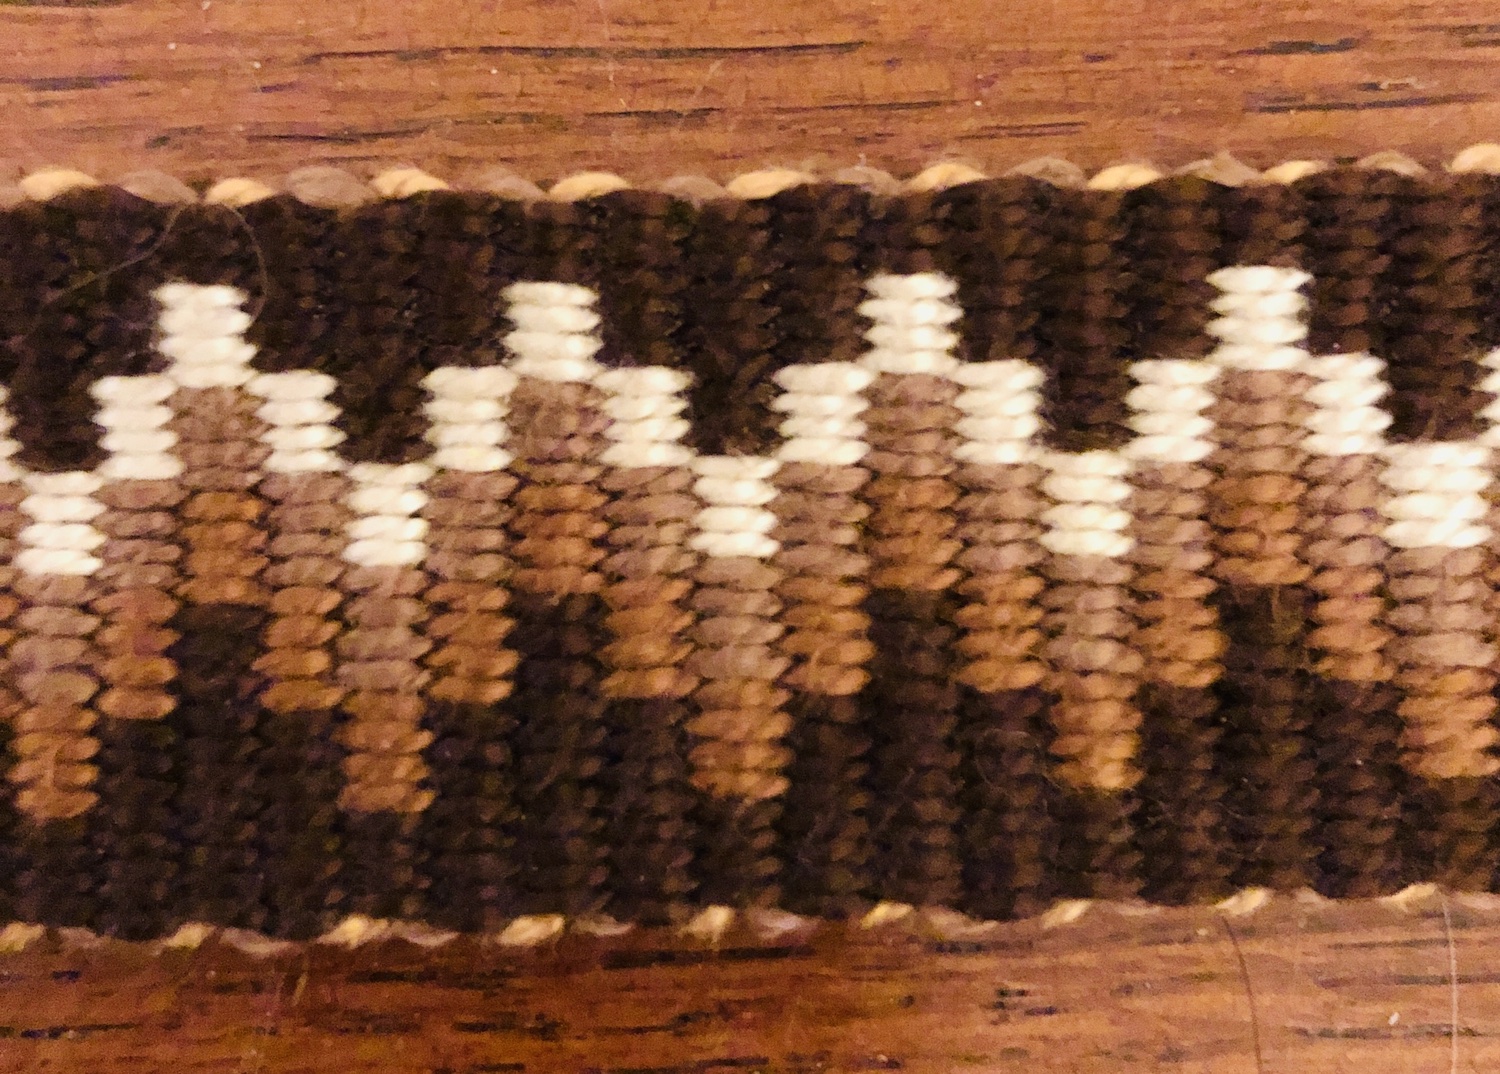 Krokbragd band weaving